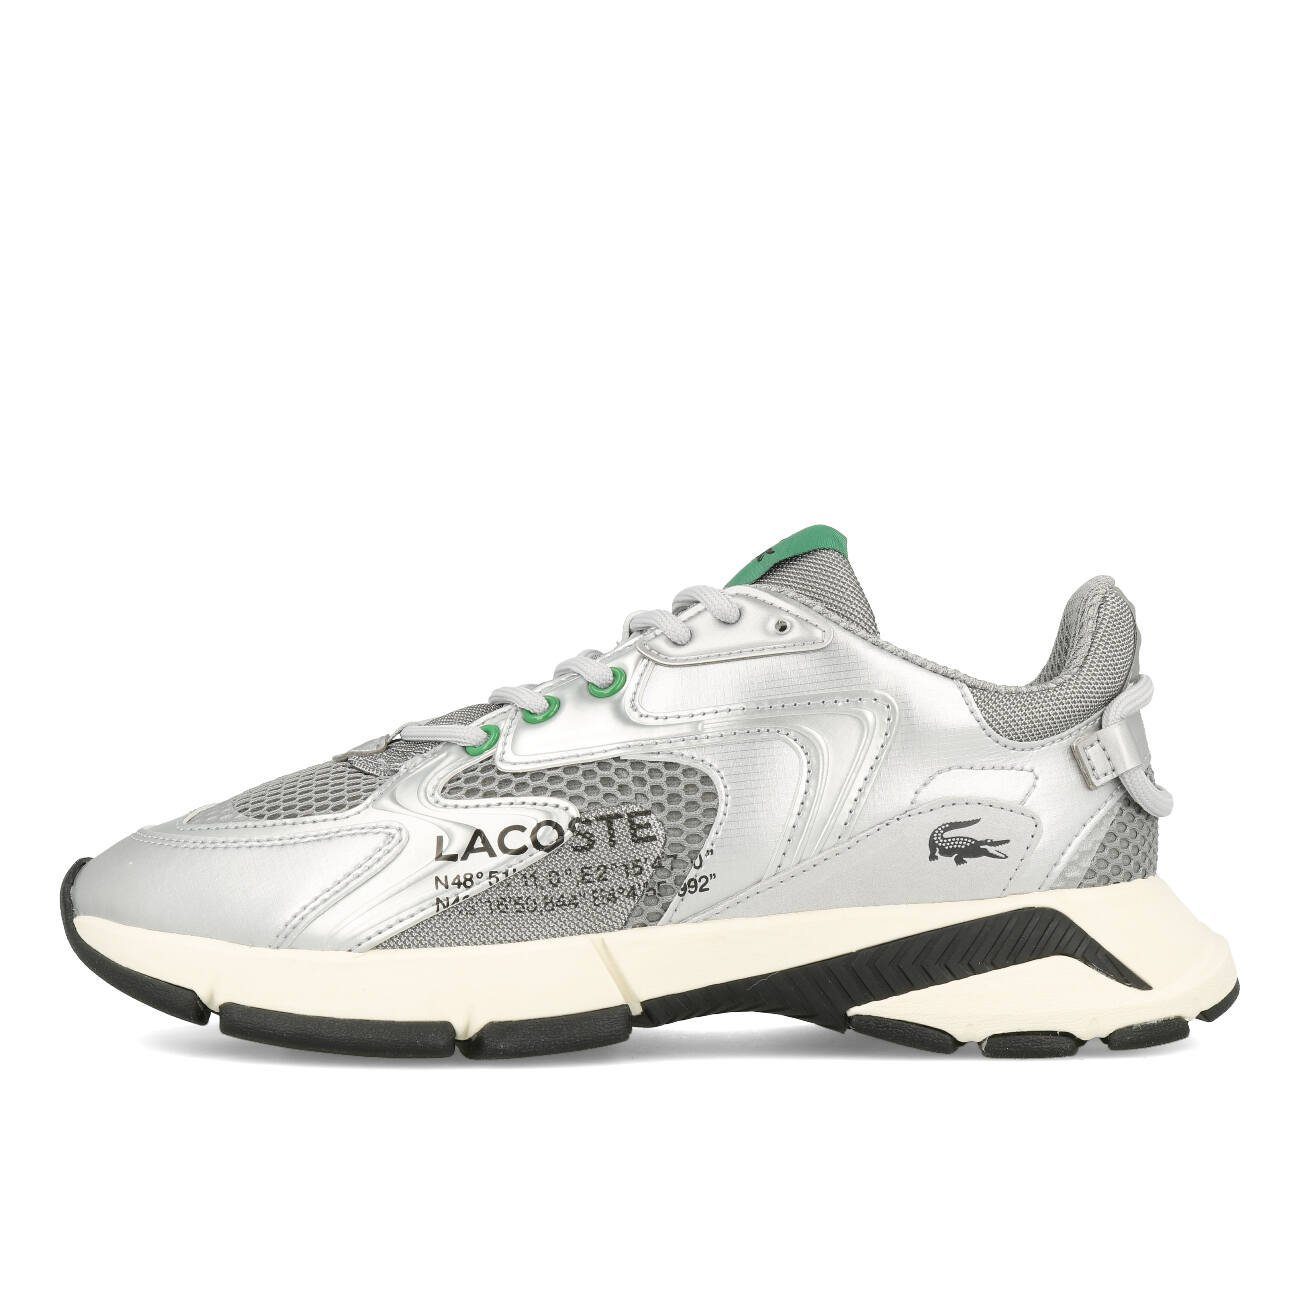 Lacoste Lacoste L003 Neo 124 3 SFA Damen Grey Silver EUR 38 Sneaker